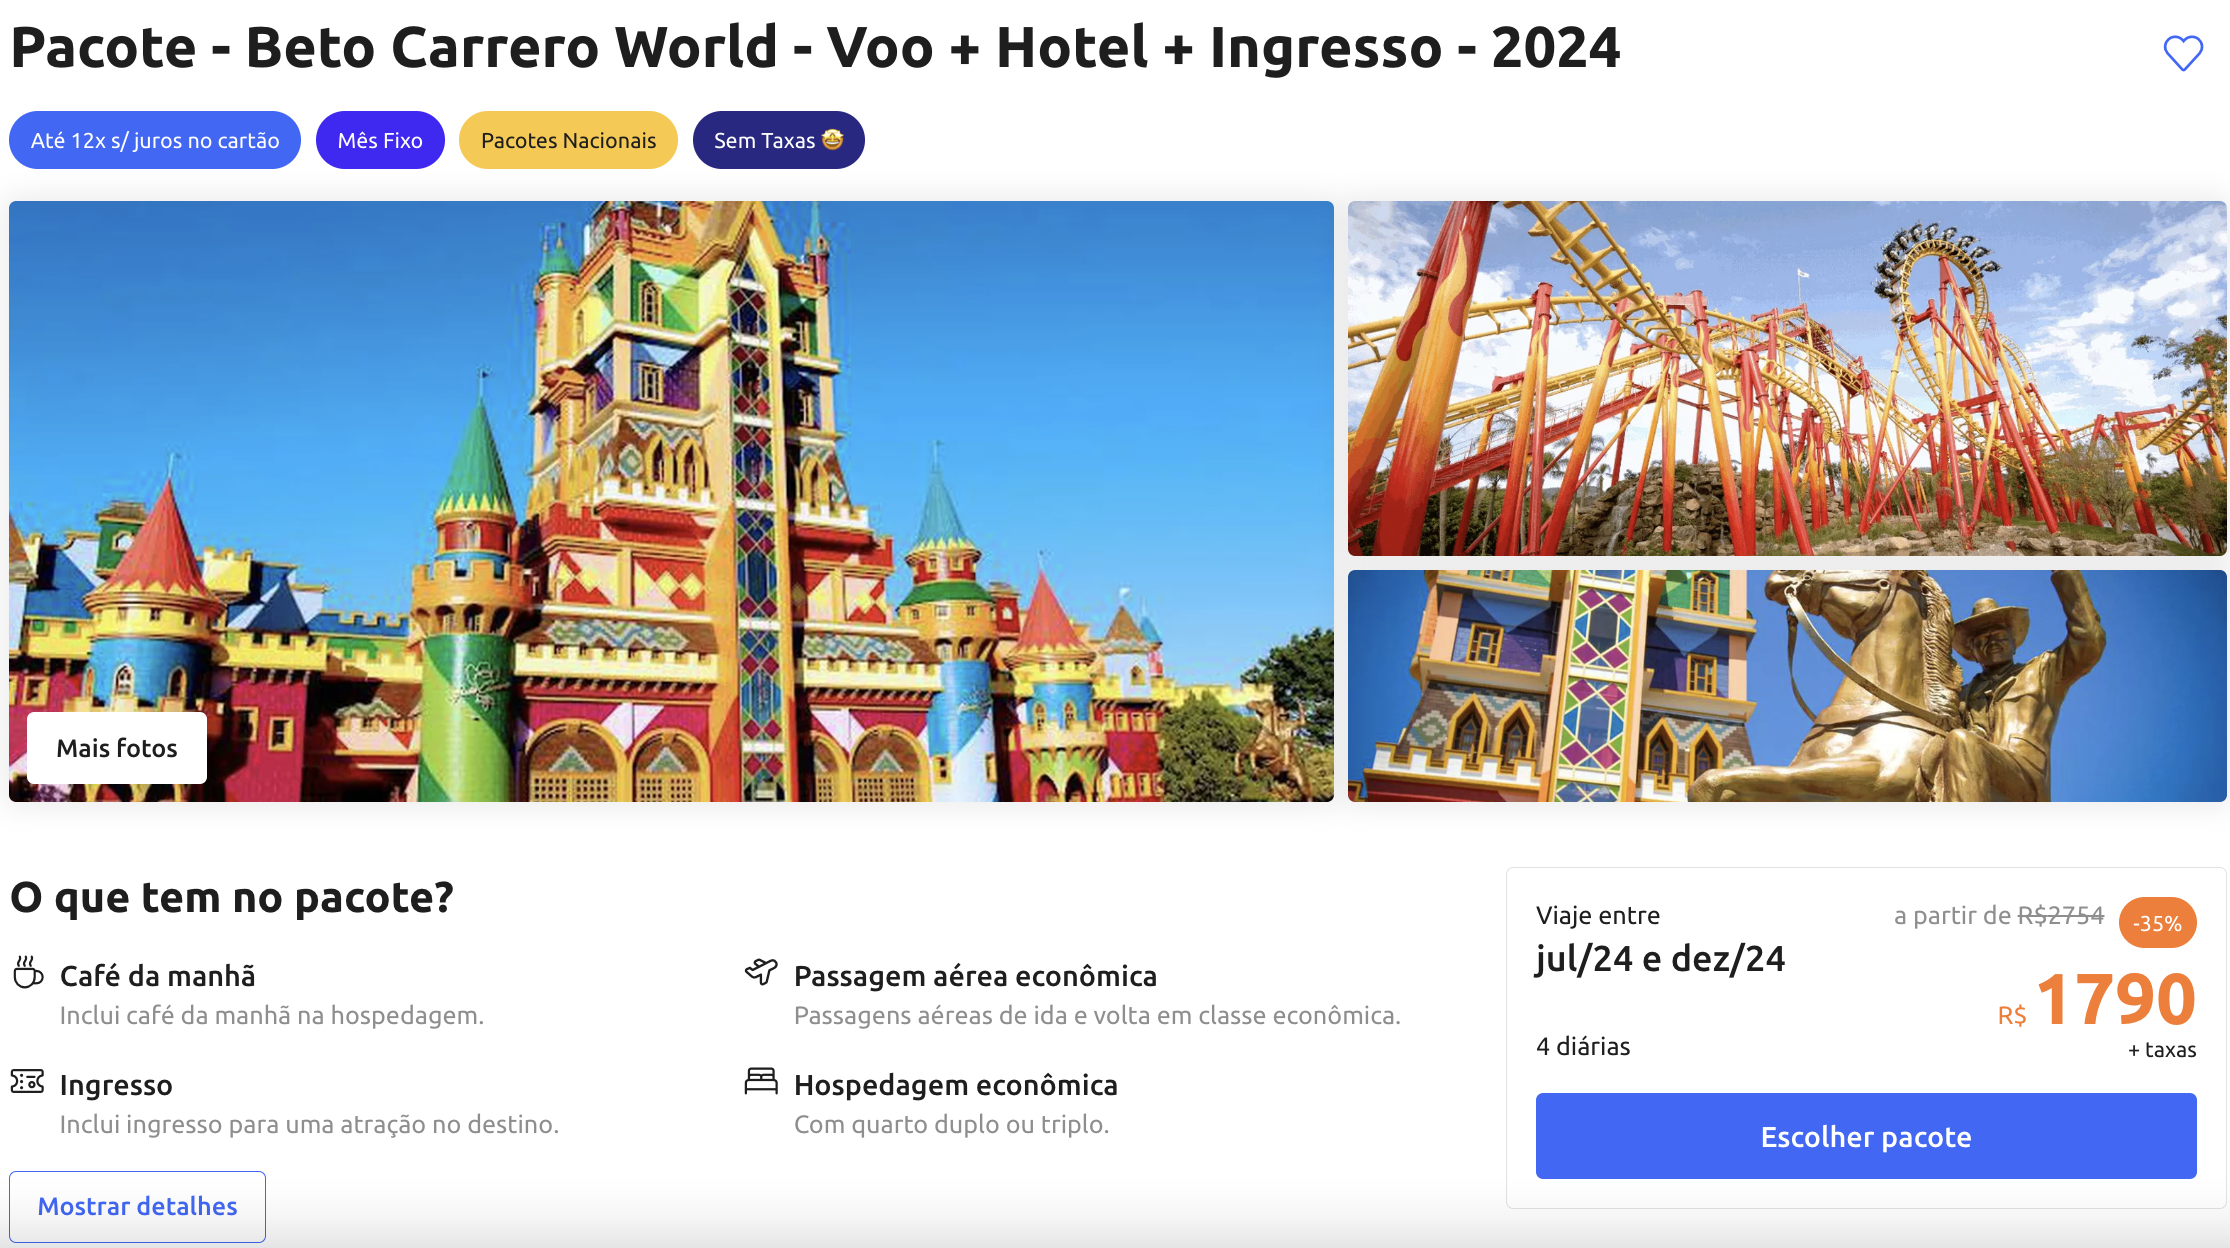 Promoção de pacote de viagem para o Beto Carrero World em 2024, incluindo voo, hotel e ingresso, com imagens coloridas do parque temático e montanha-russa.